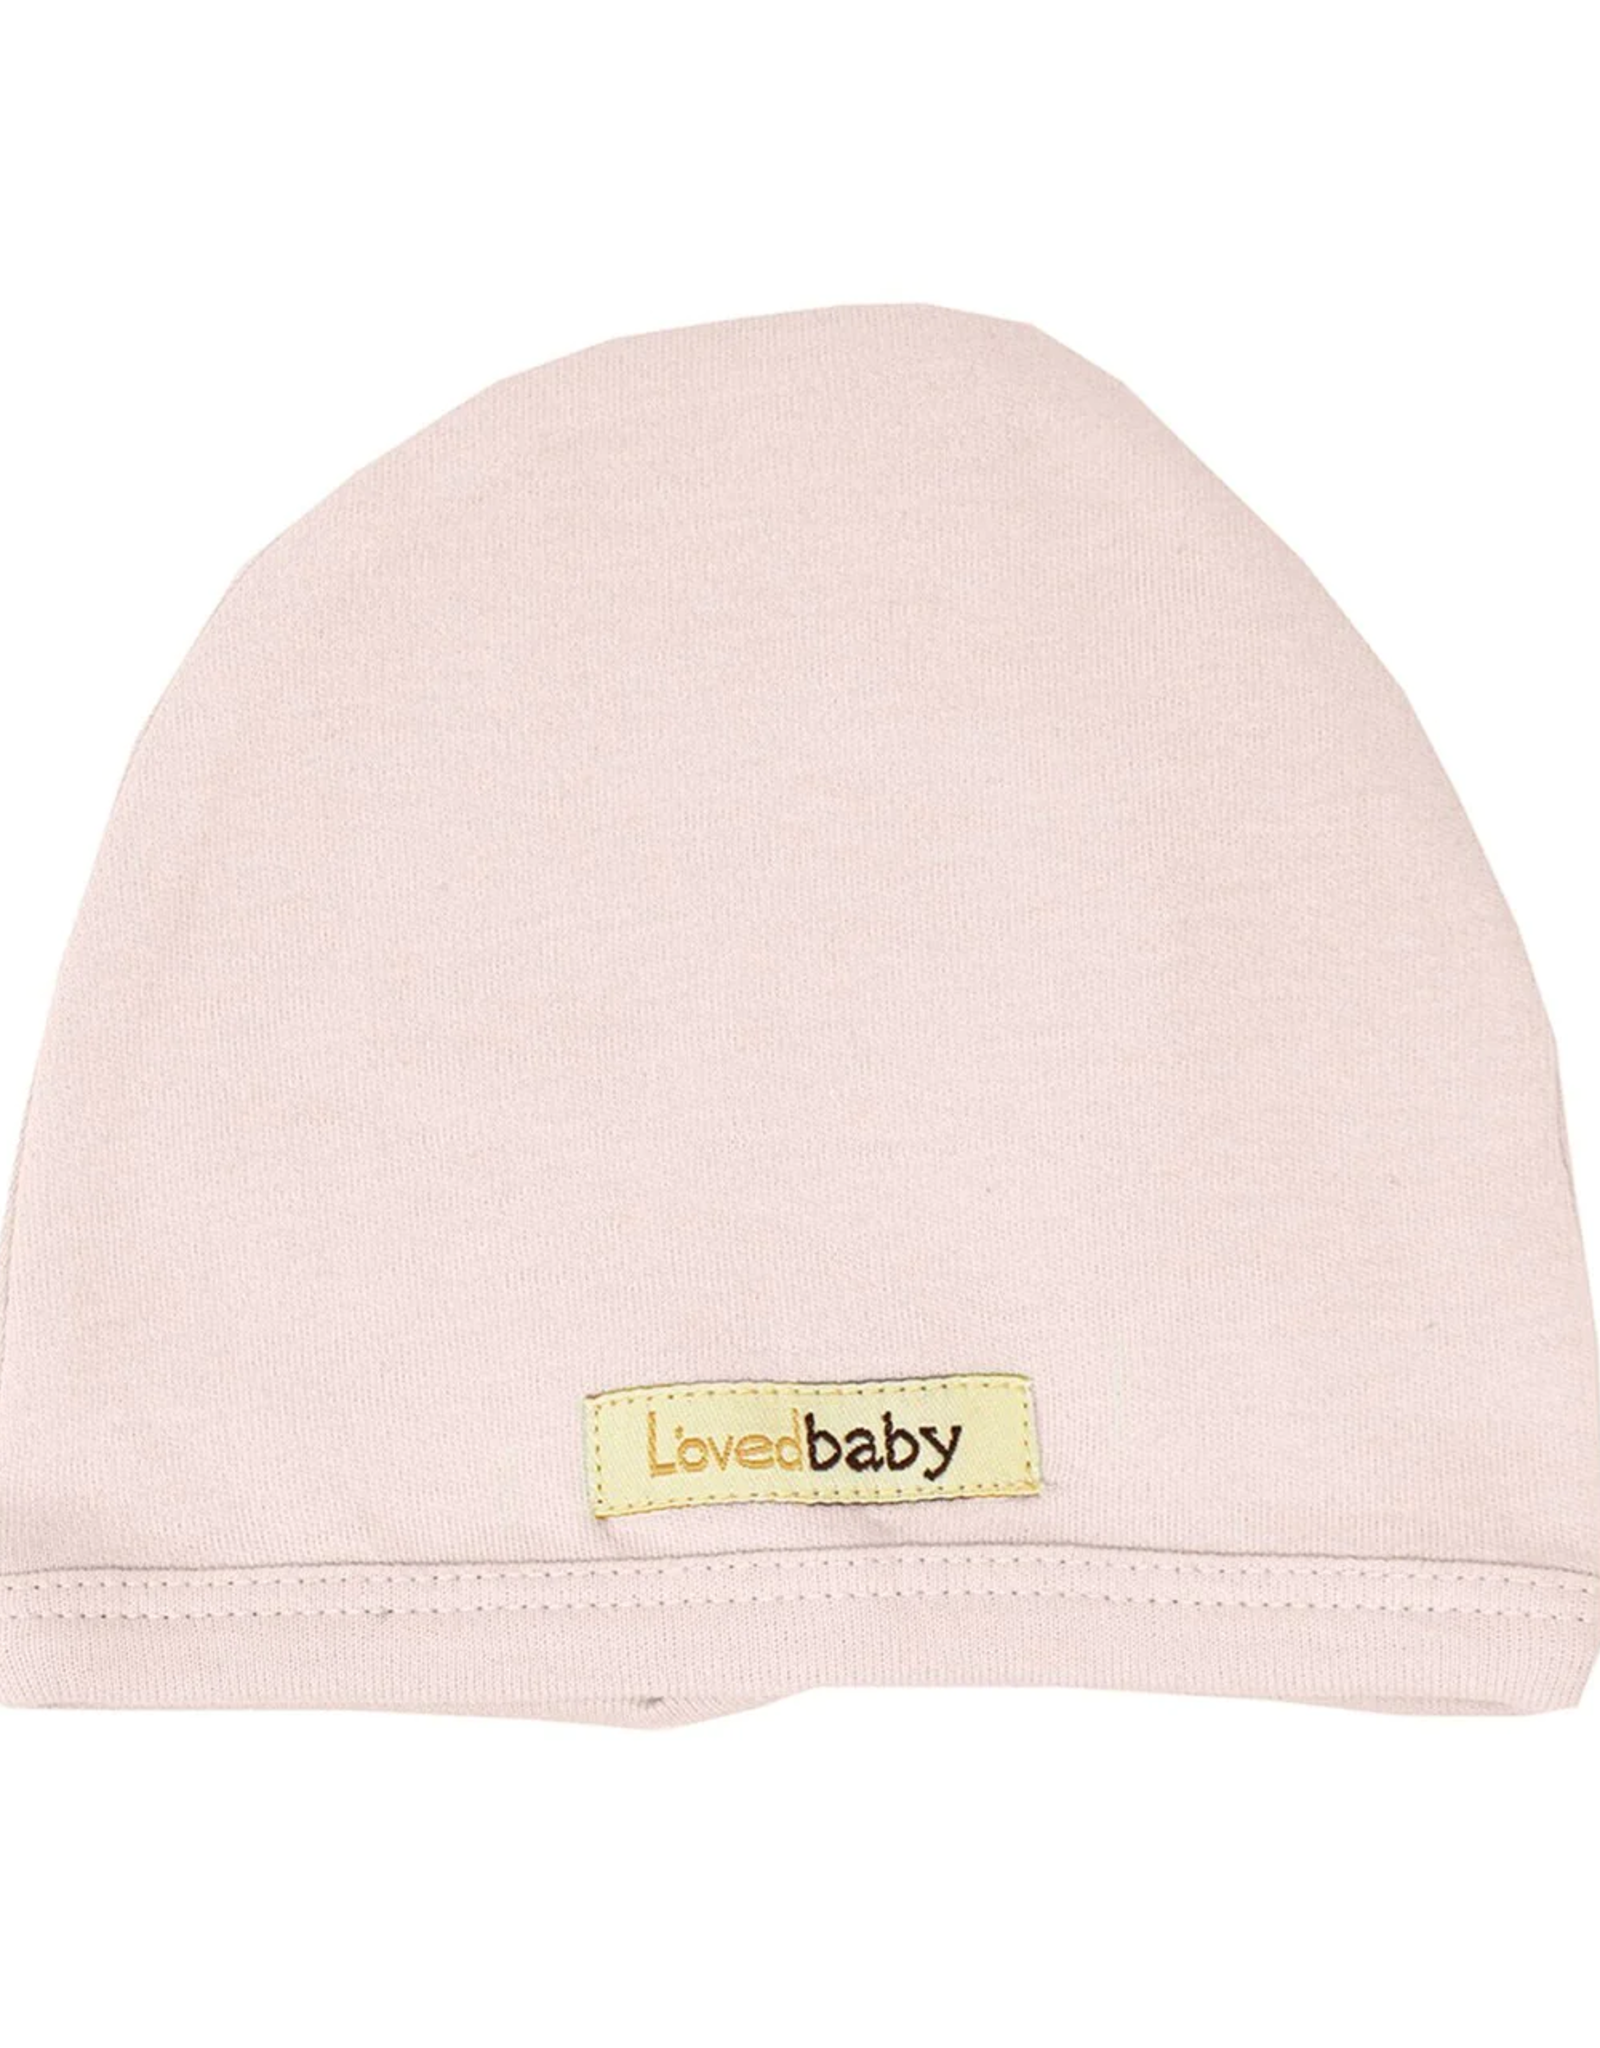 L'oved Baby Organic Cute Cap- Blush